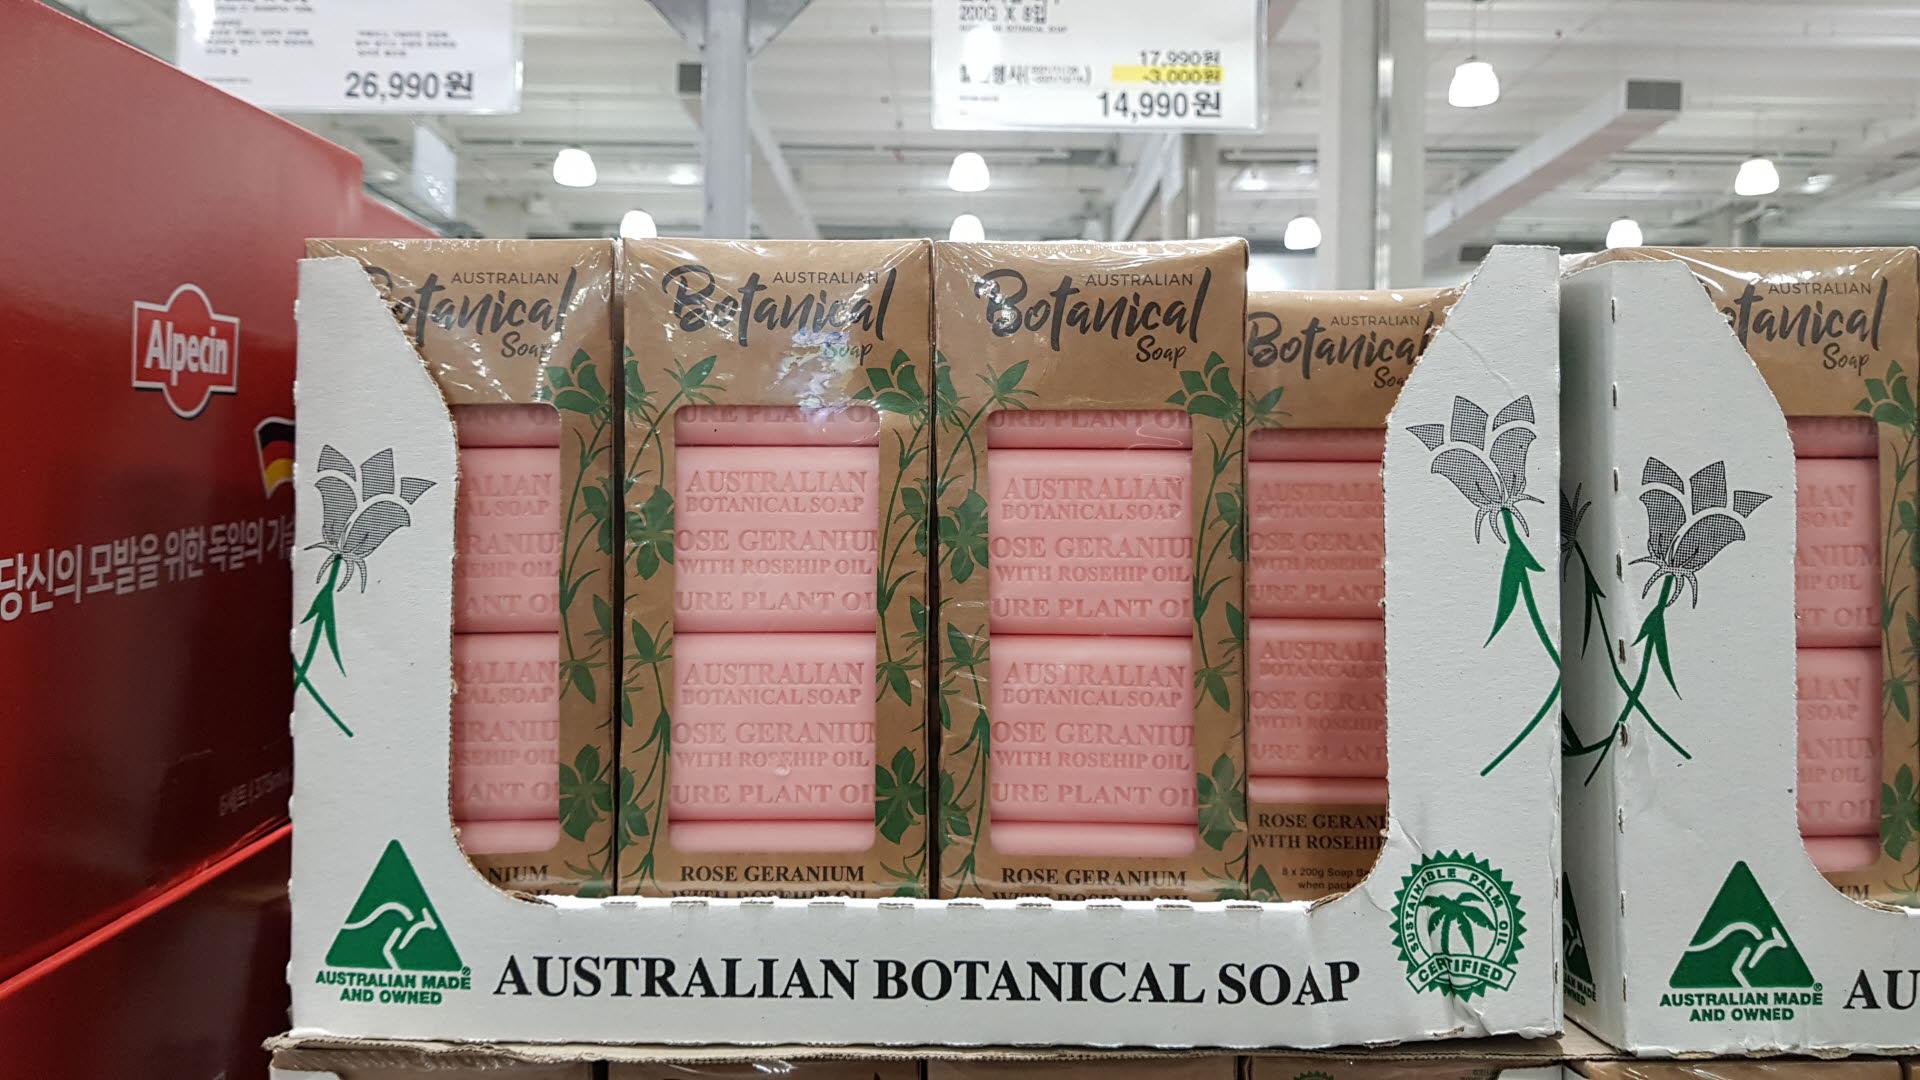 오스트레일리안
보태니컬 비누
200G X 8입
AUSTRALIAN BOTANICAL SOAP